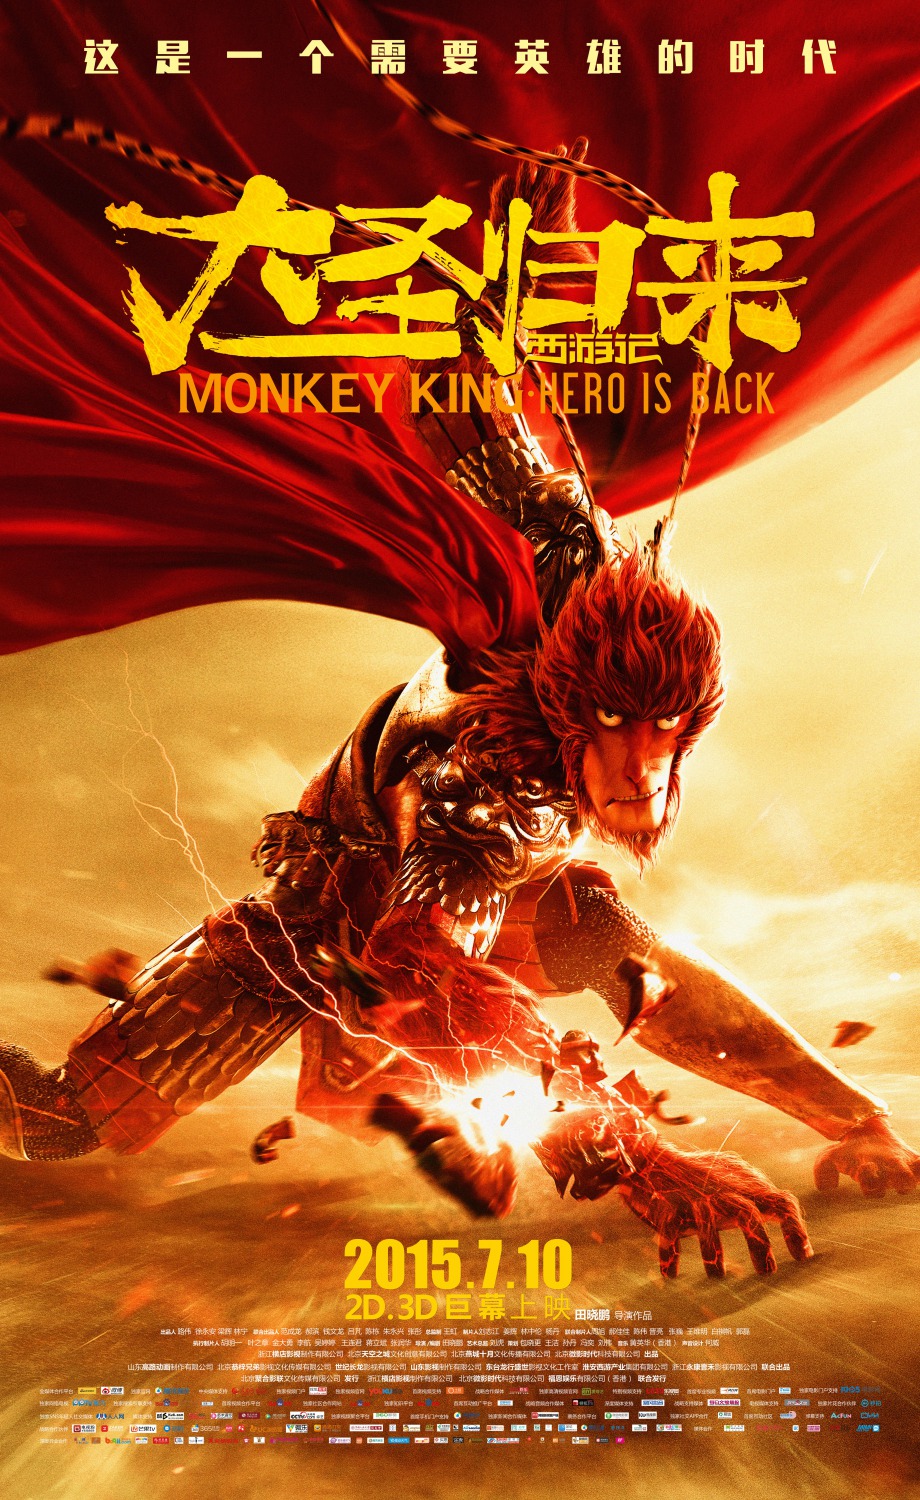 Extra Large Movie Poster Image for Xi you ji zhi da sheng gui lai (#1 of 2)